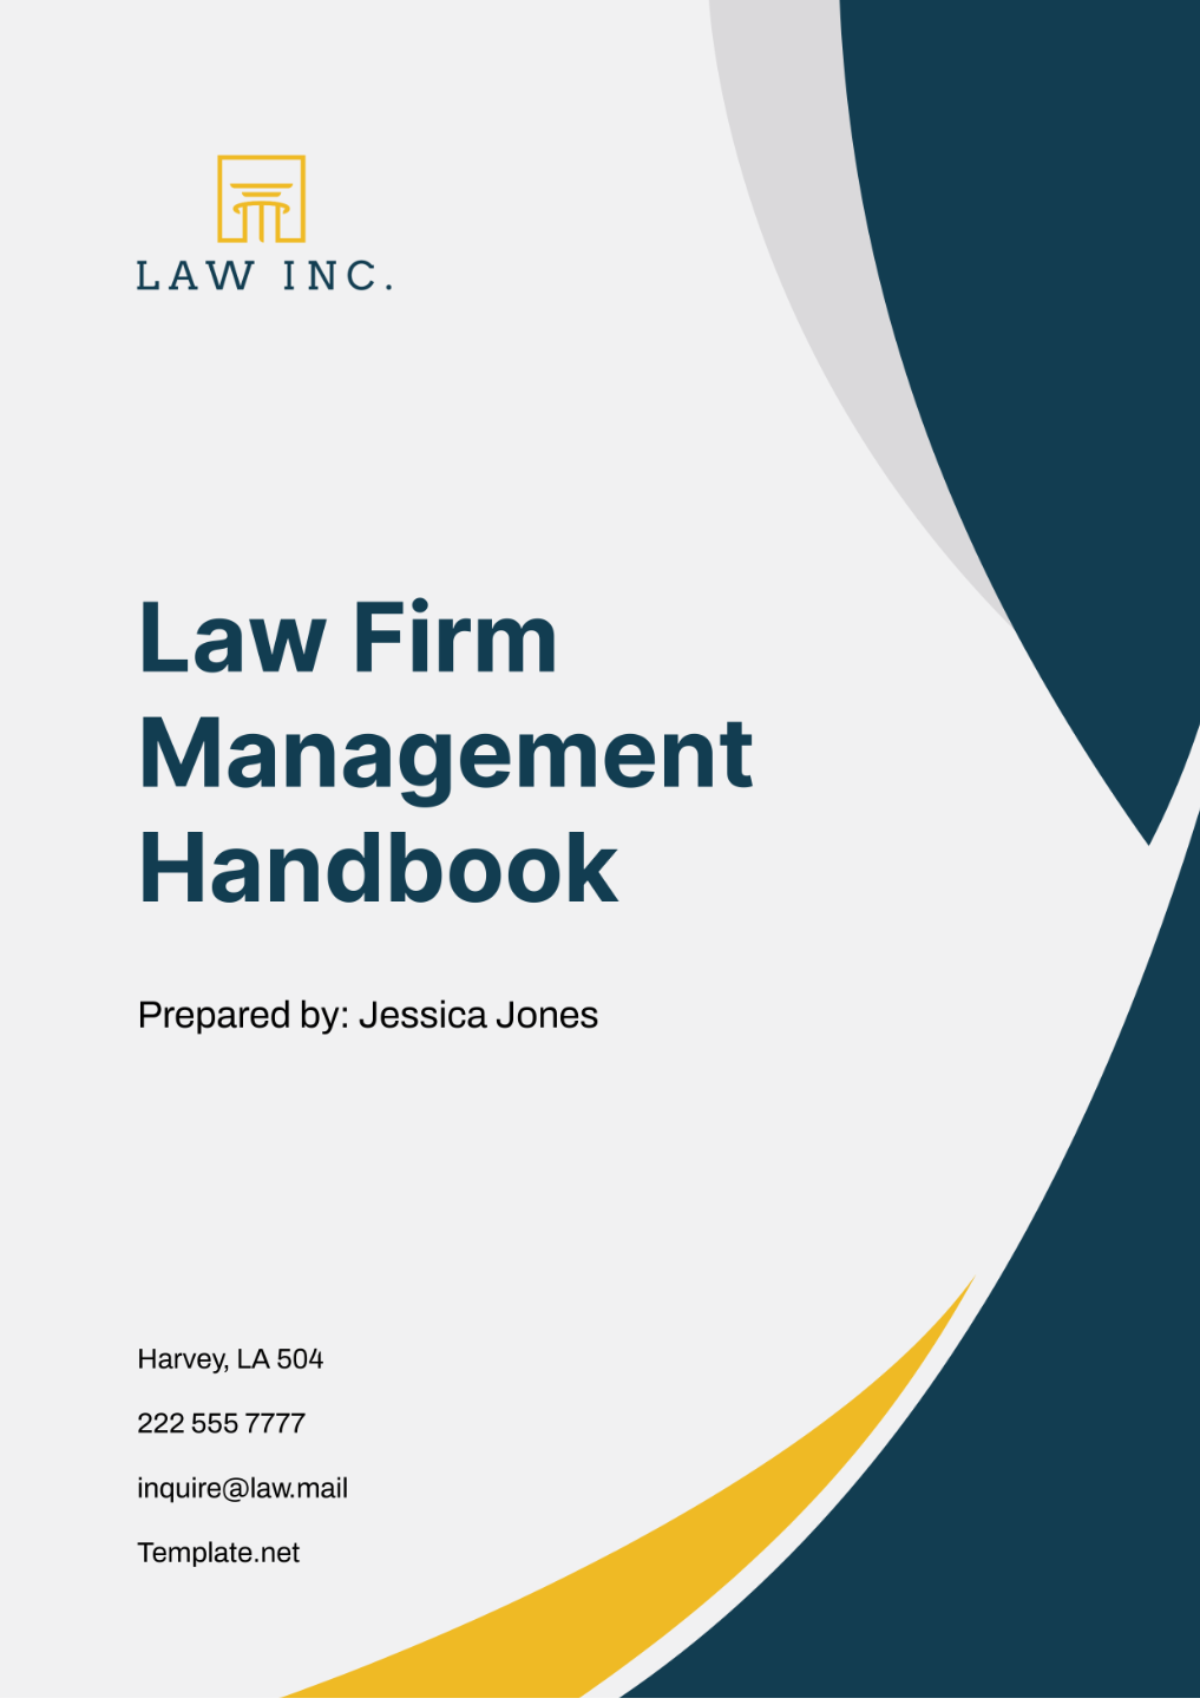 Law Firm Management Handbook Template